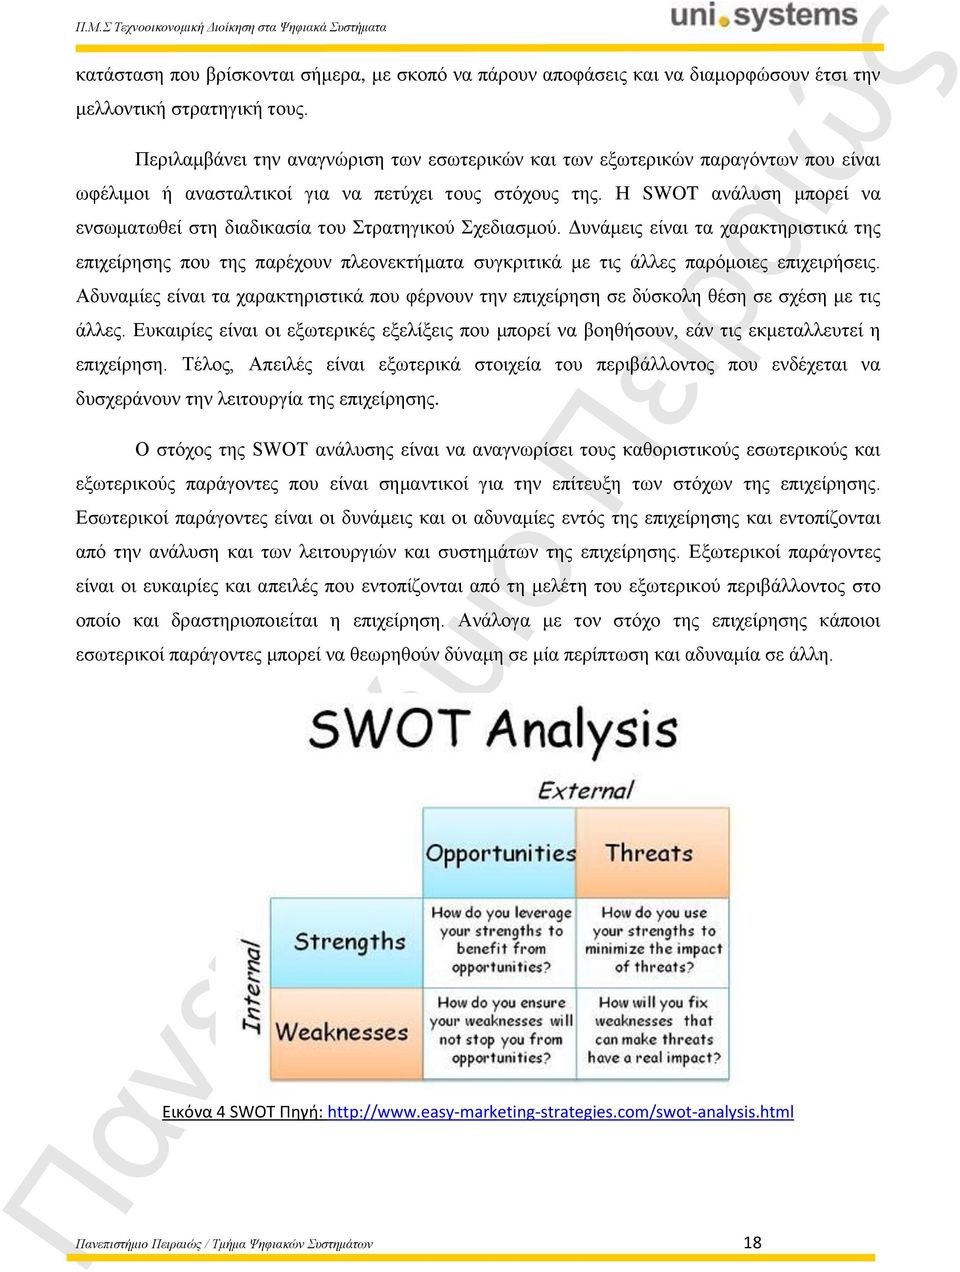 Η SWOT ανάλυση μπορεί να ενσωματωθεί στη διαδικασία του Στρατηγικού Σχεδιασμού.